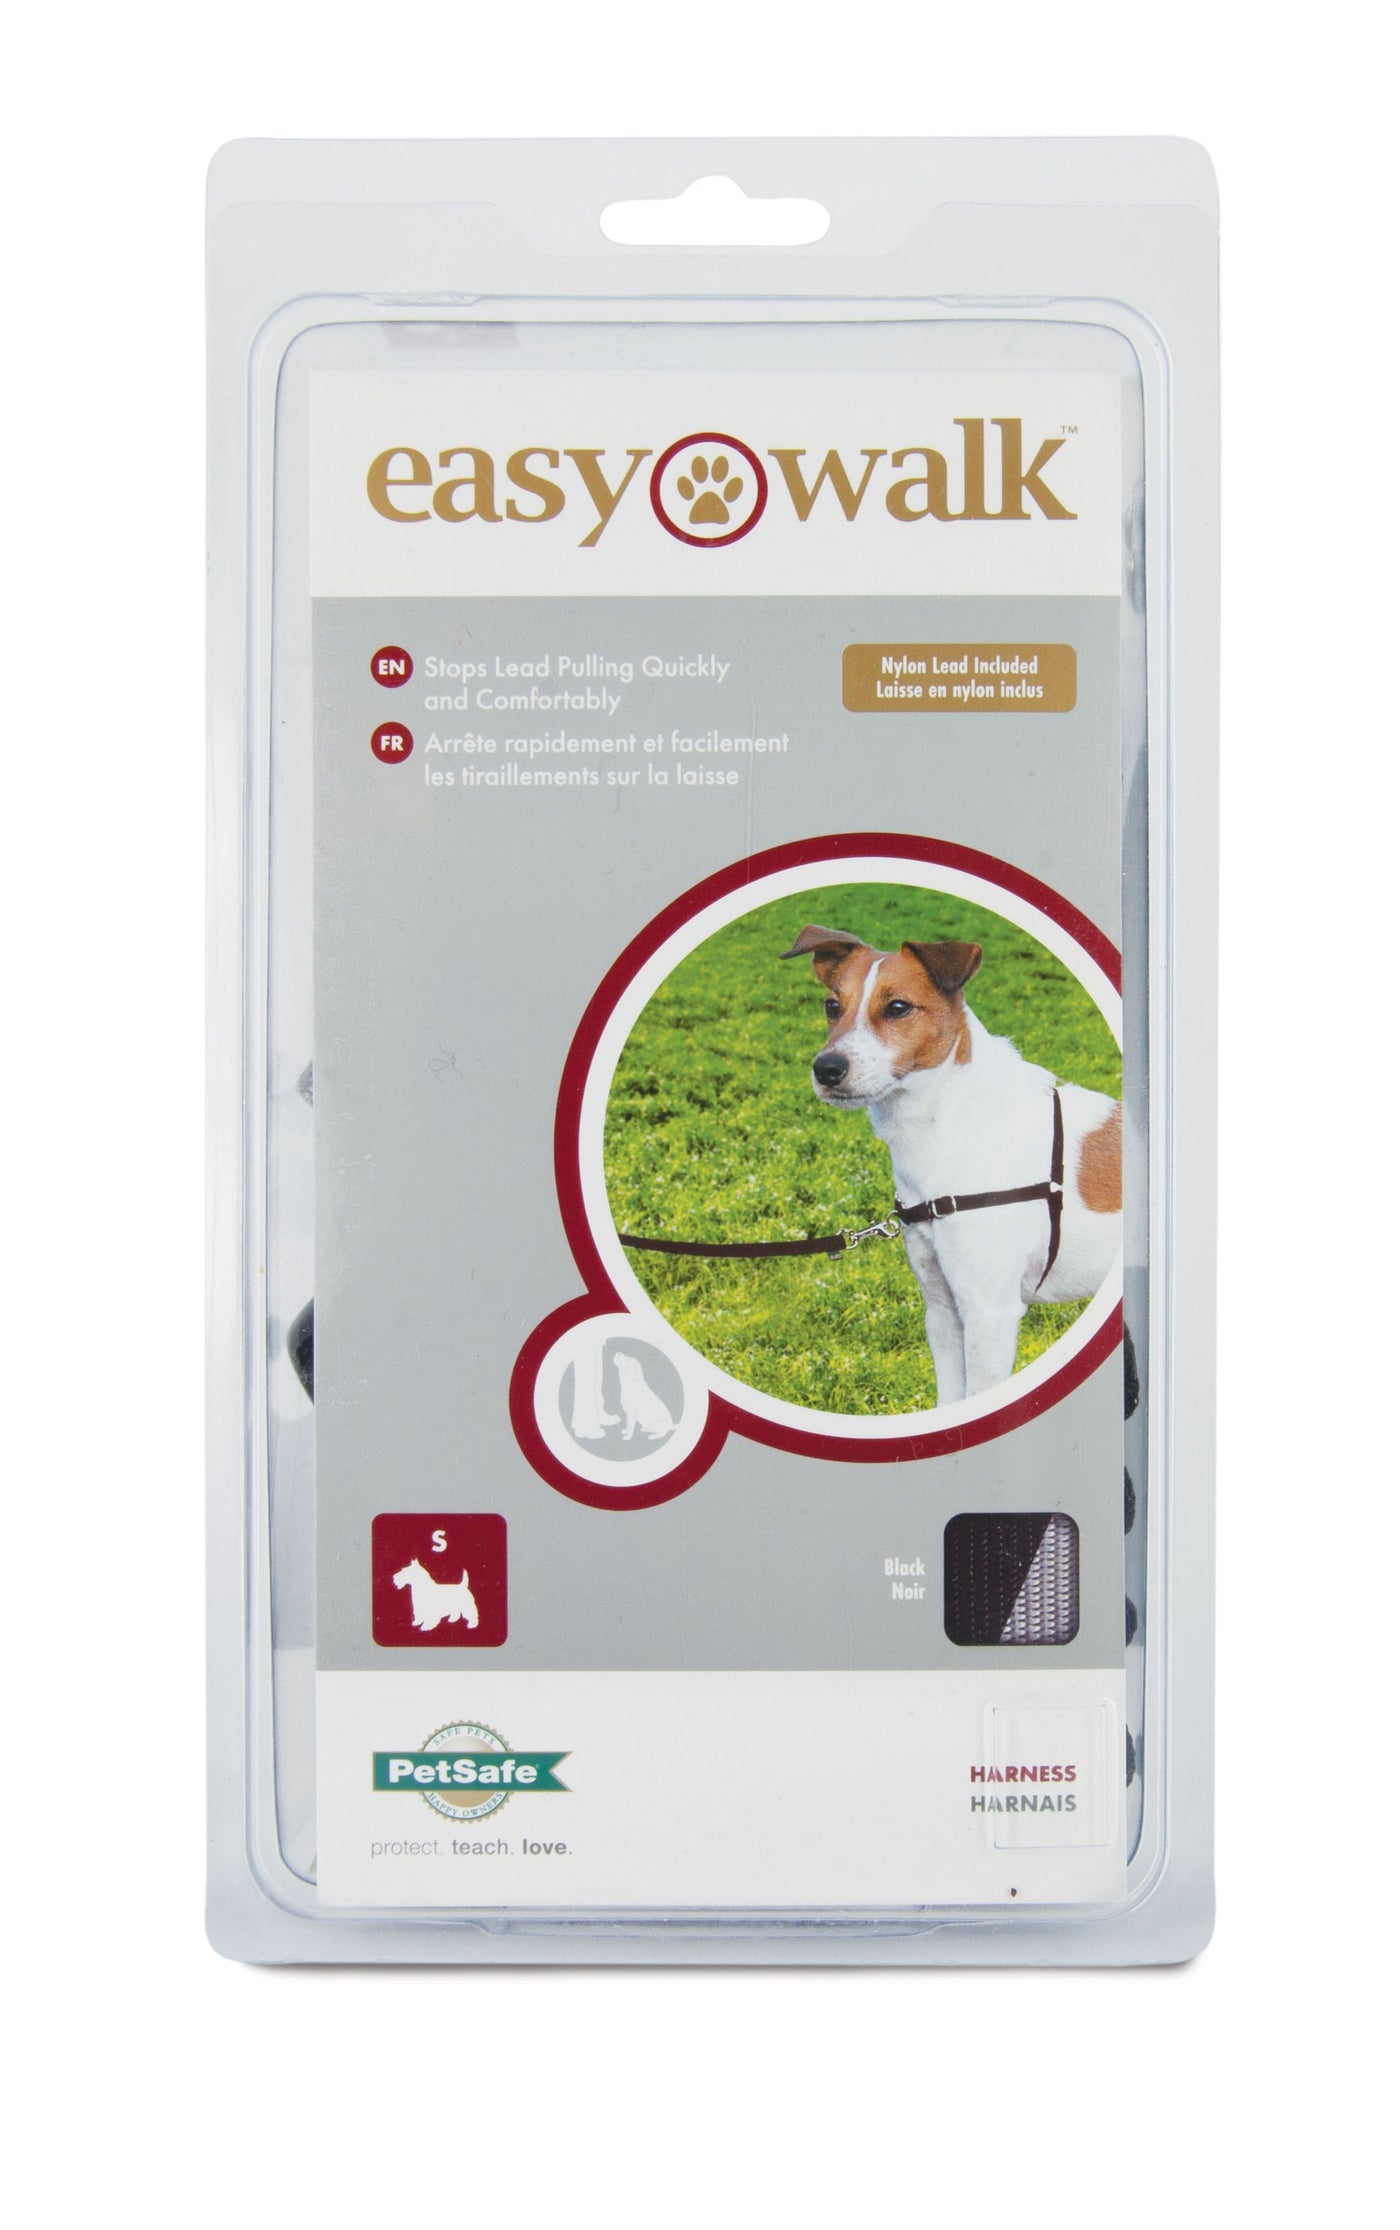 Petsafe-PetSafe-Easy-Walk-No-Pull-Harness-Dogs-Small